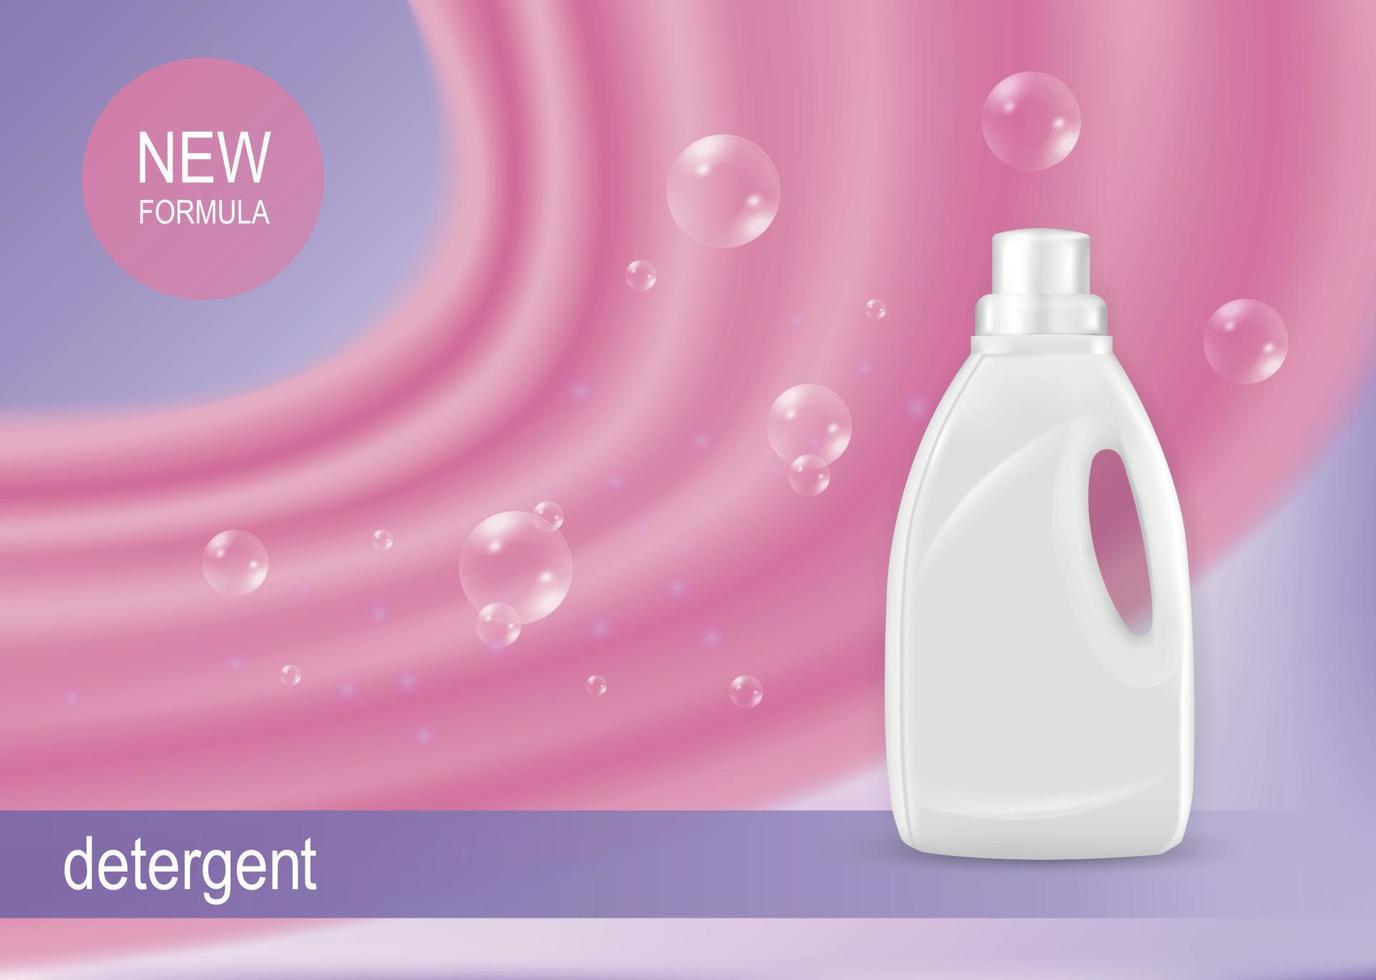 composición publicitaria de fórmula de detergente vector